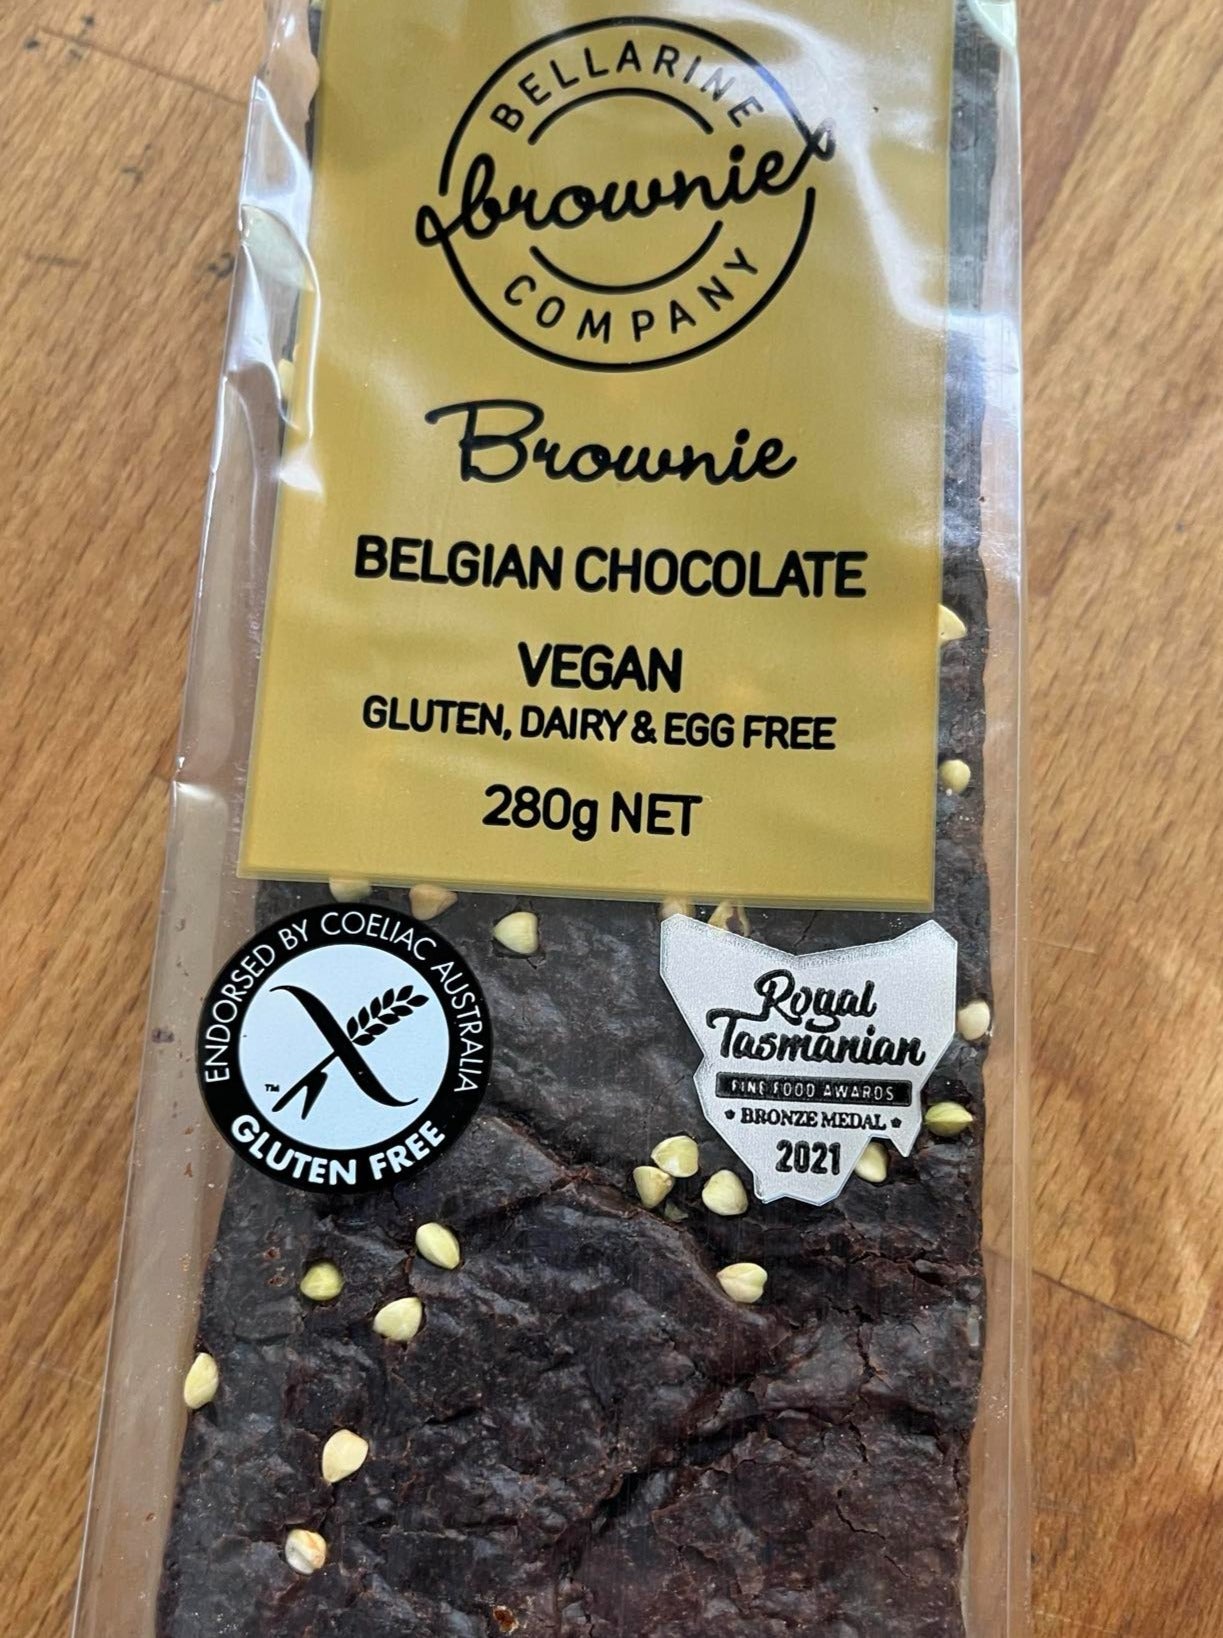 BELGIAN CHOCOLATE BROWNIE